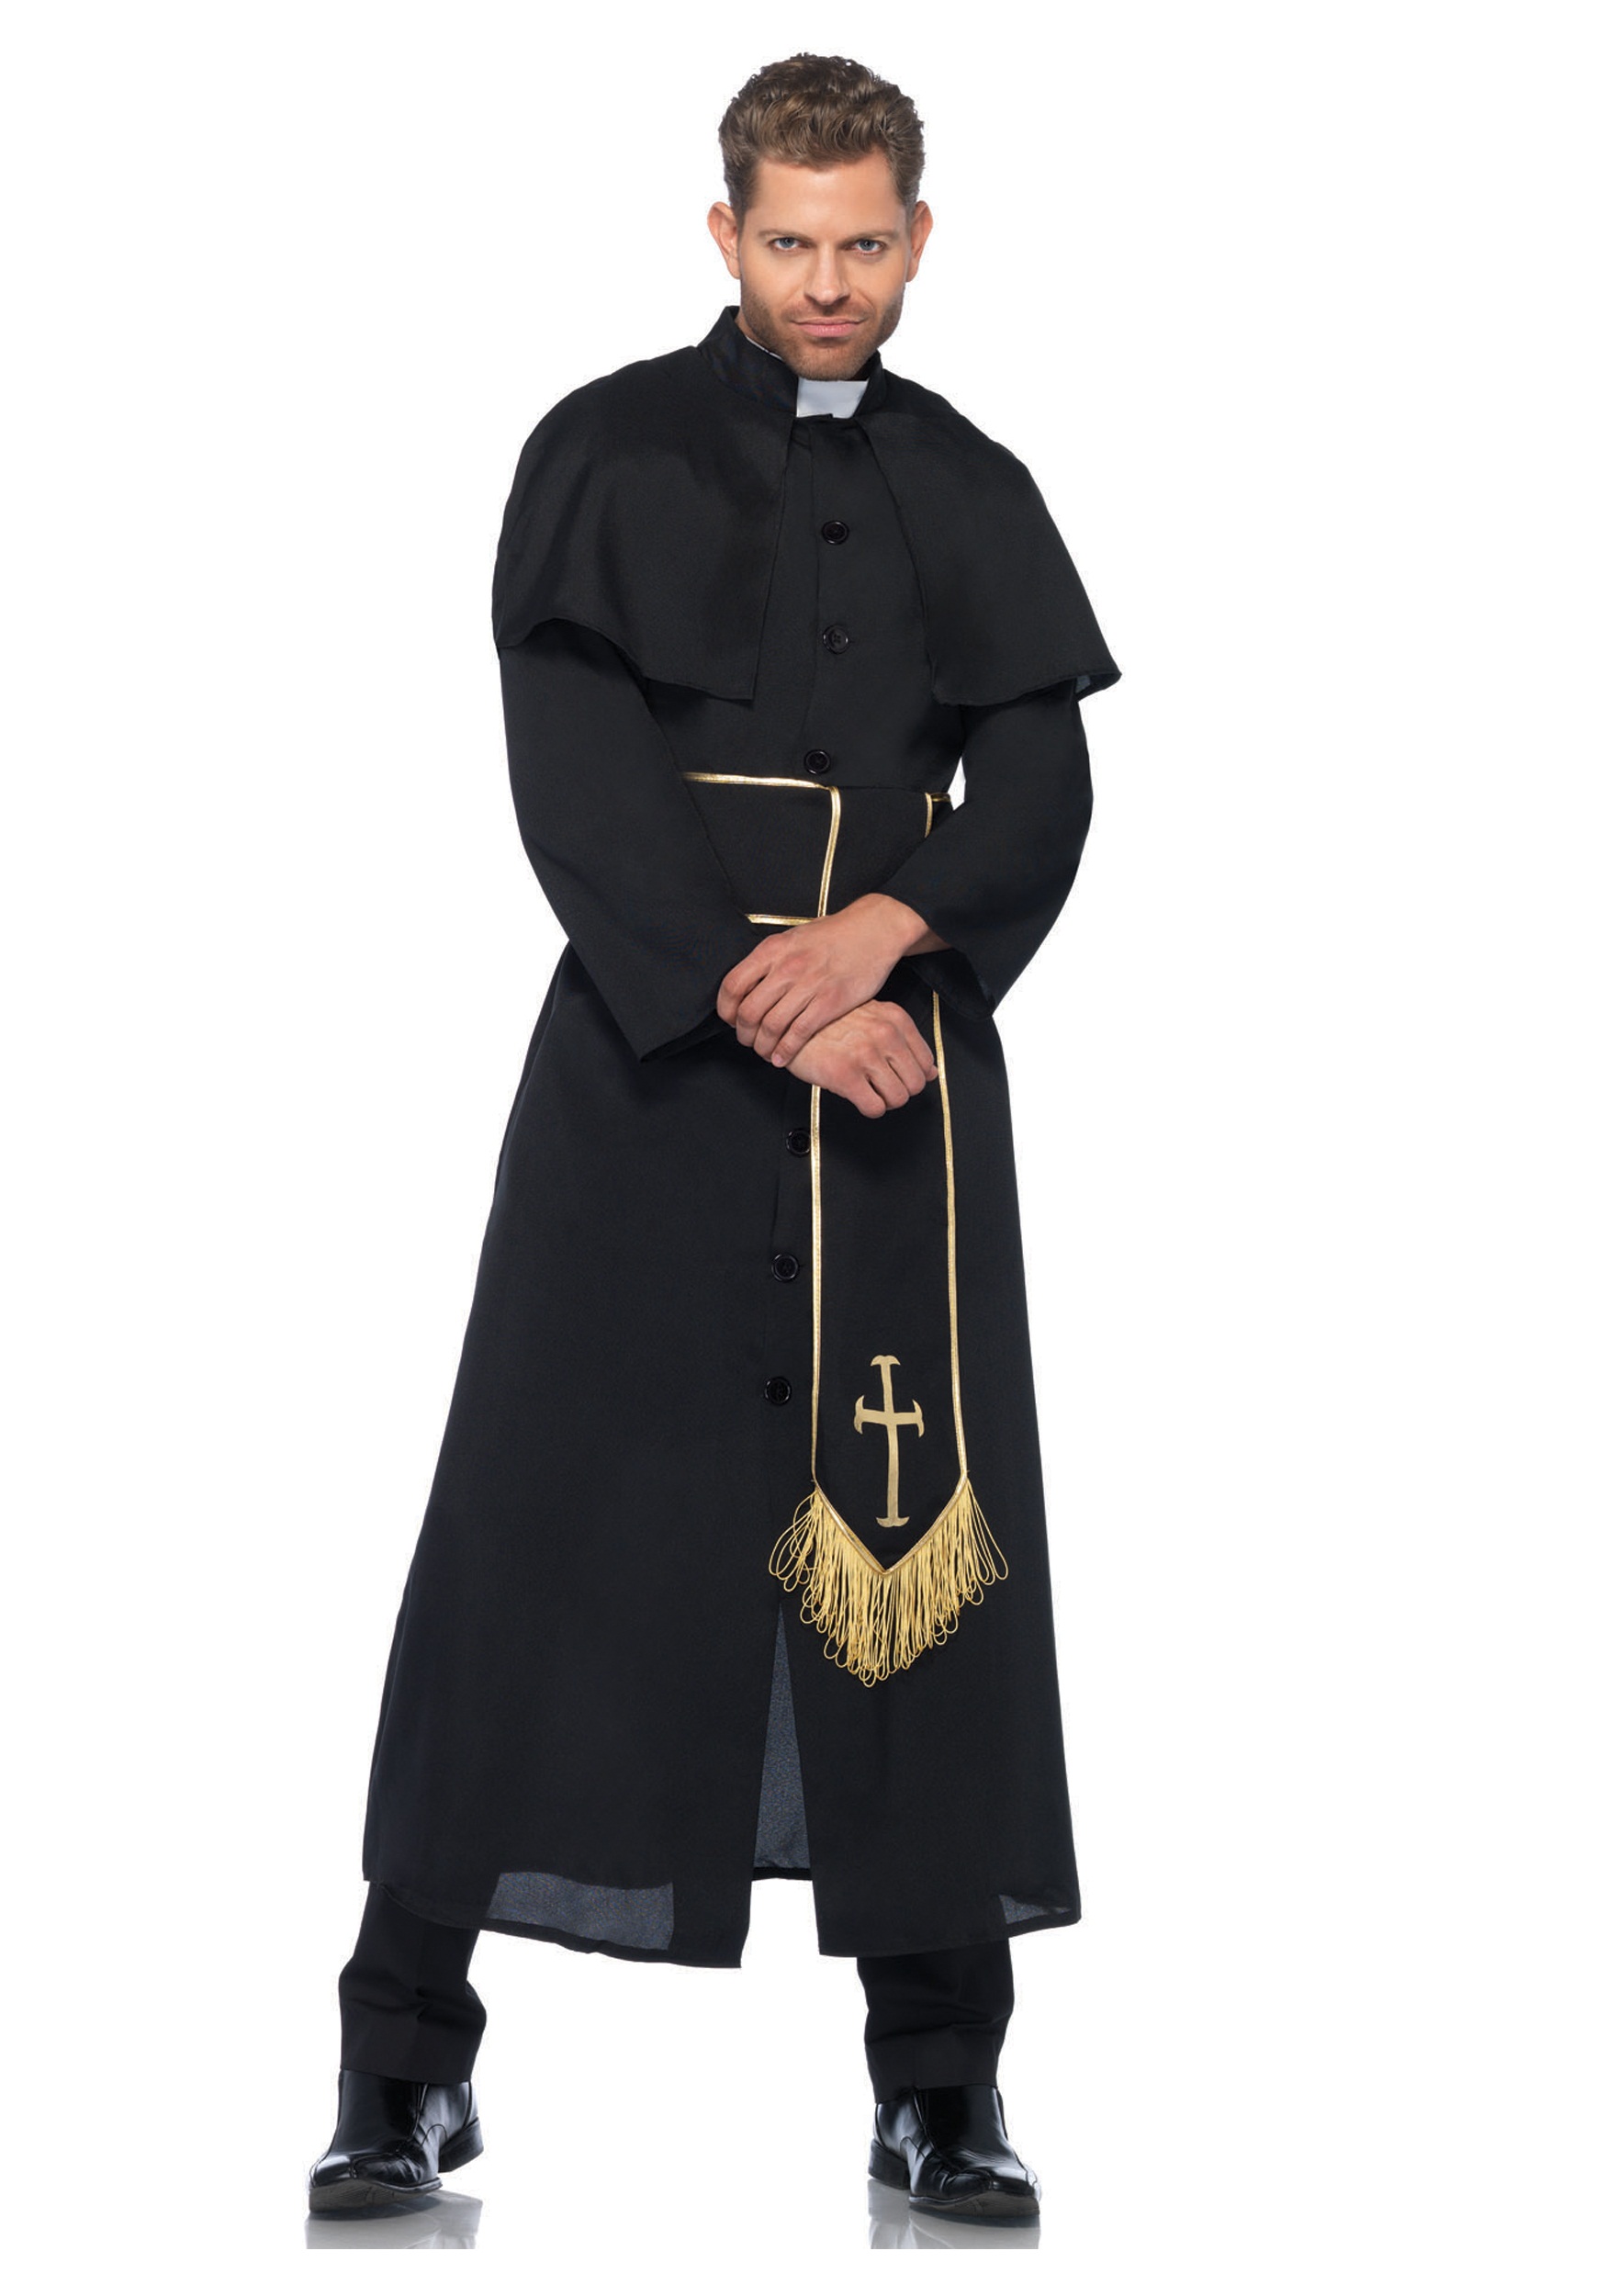 Priest Adult Men’s Costume